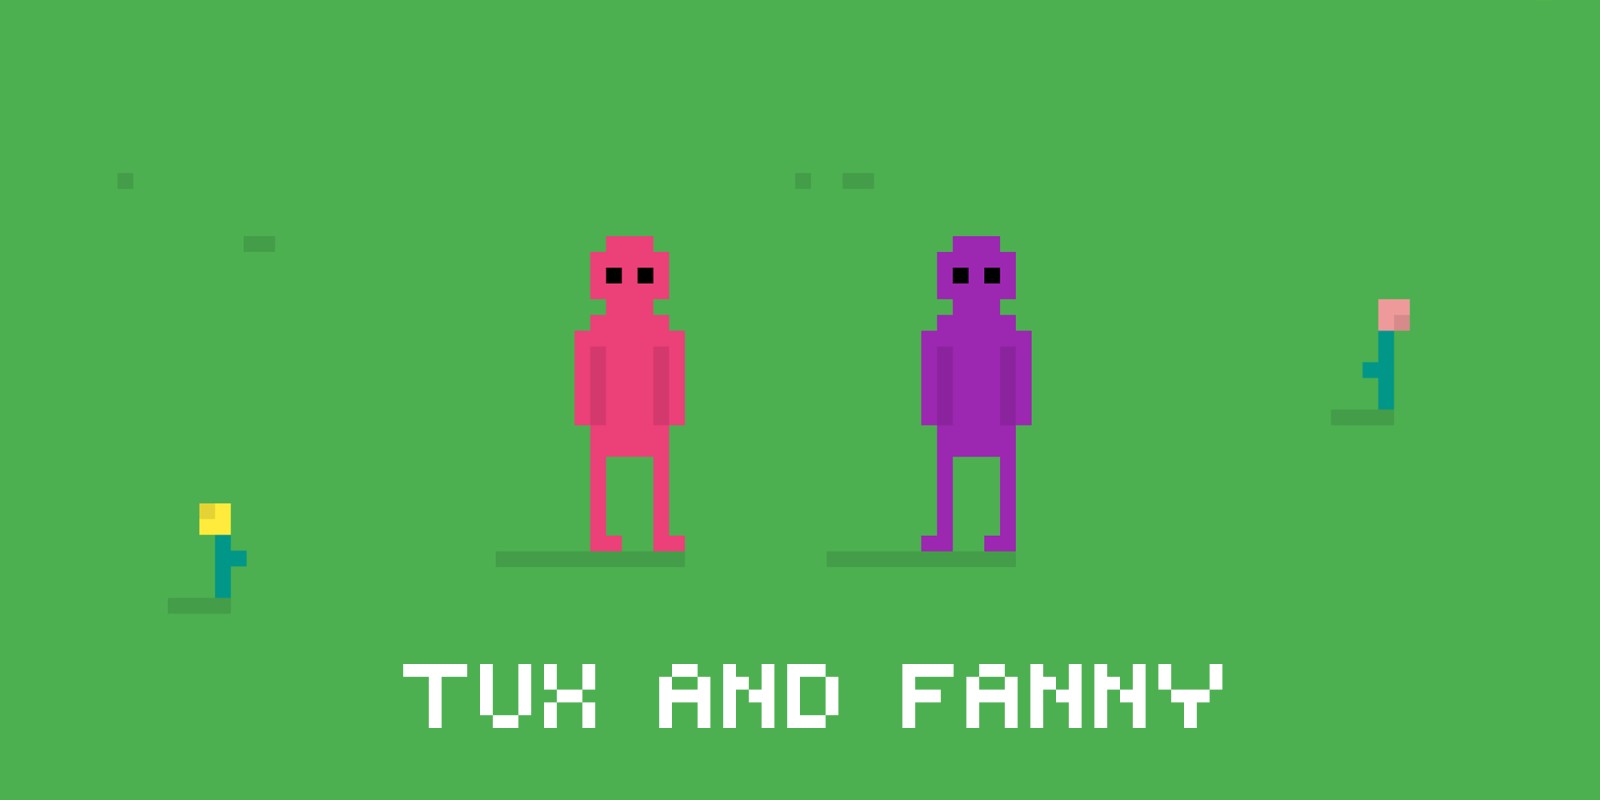 jaquette du jeu vidéo Tux and Fanny